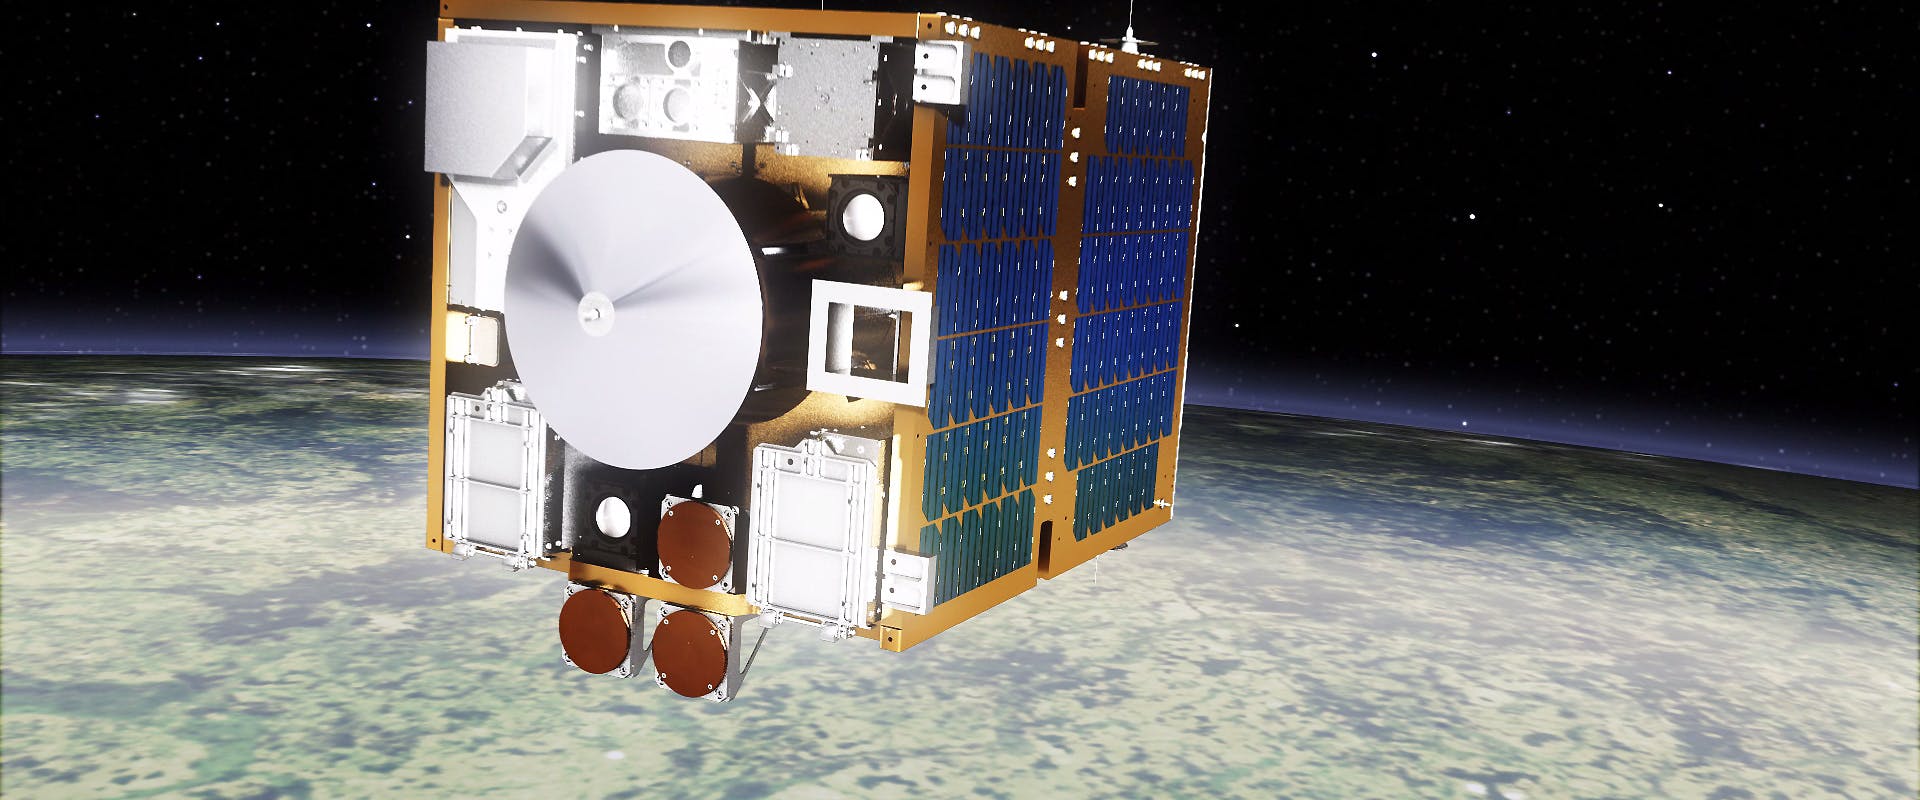 The RemoveDEBRIS satellite